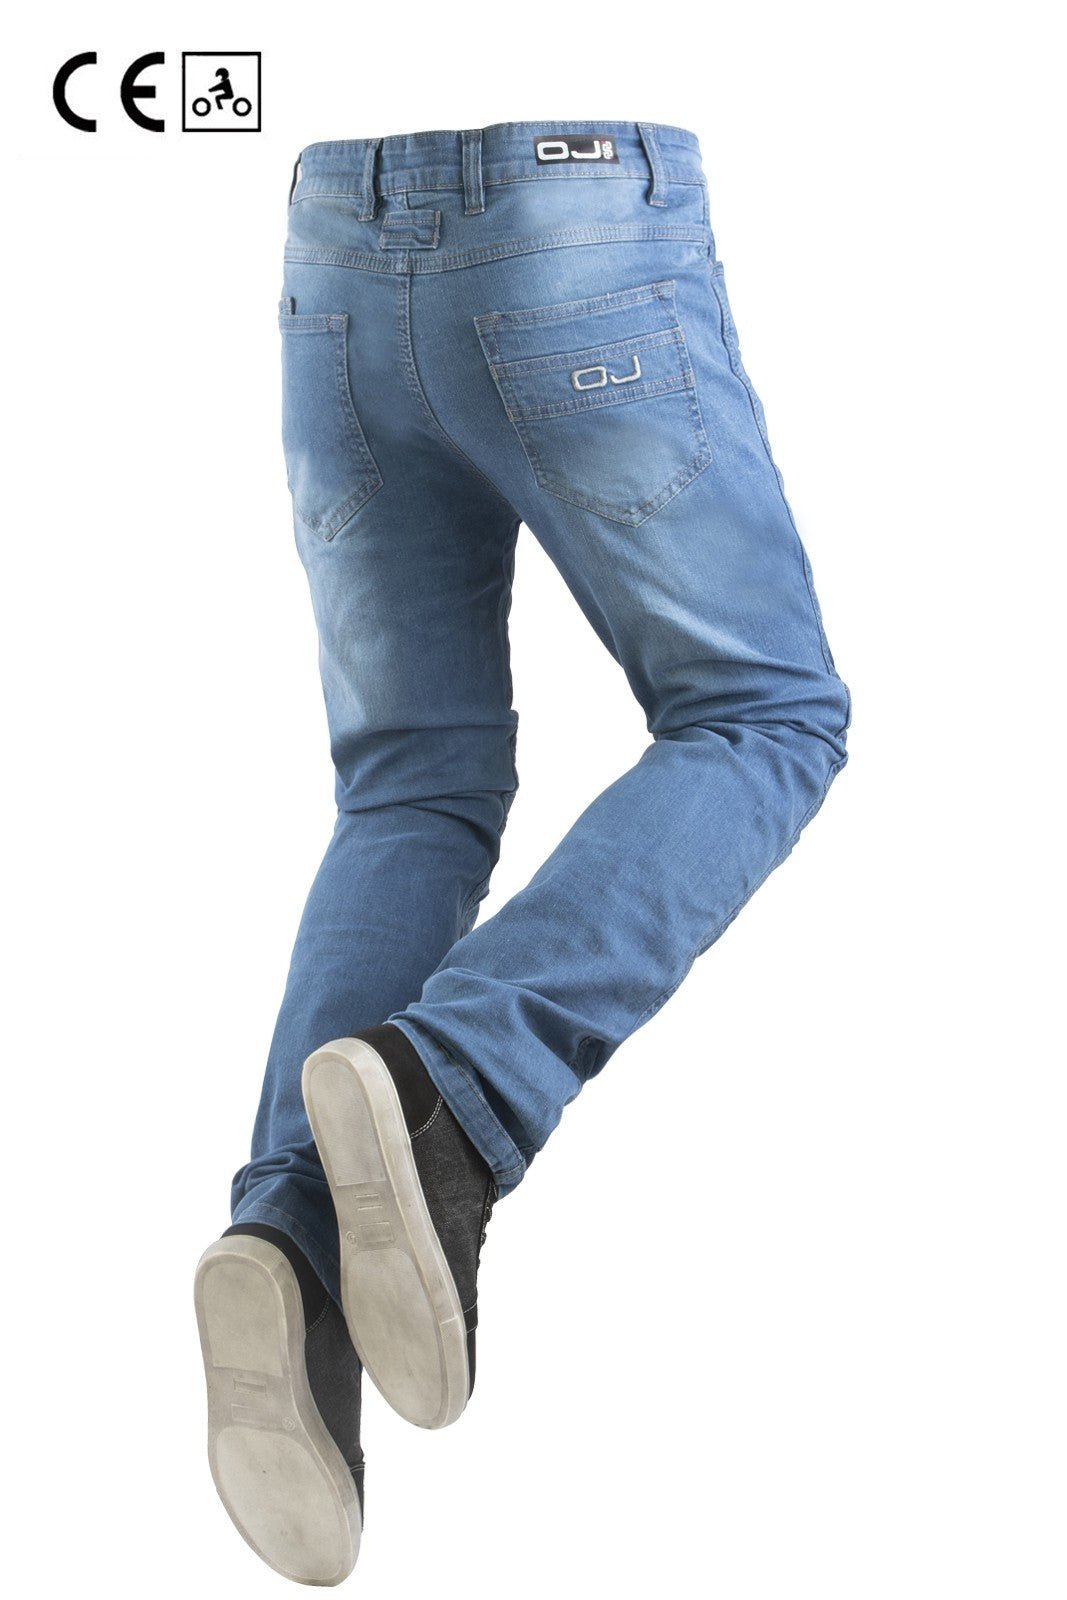 Jeans moto OJ UPGRADE uomo estivi ventilati con protezioni - OnTheRoad.shop - OJ